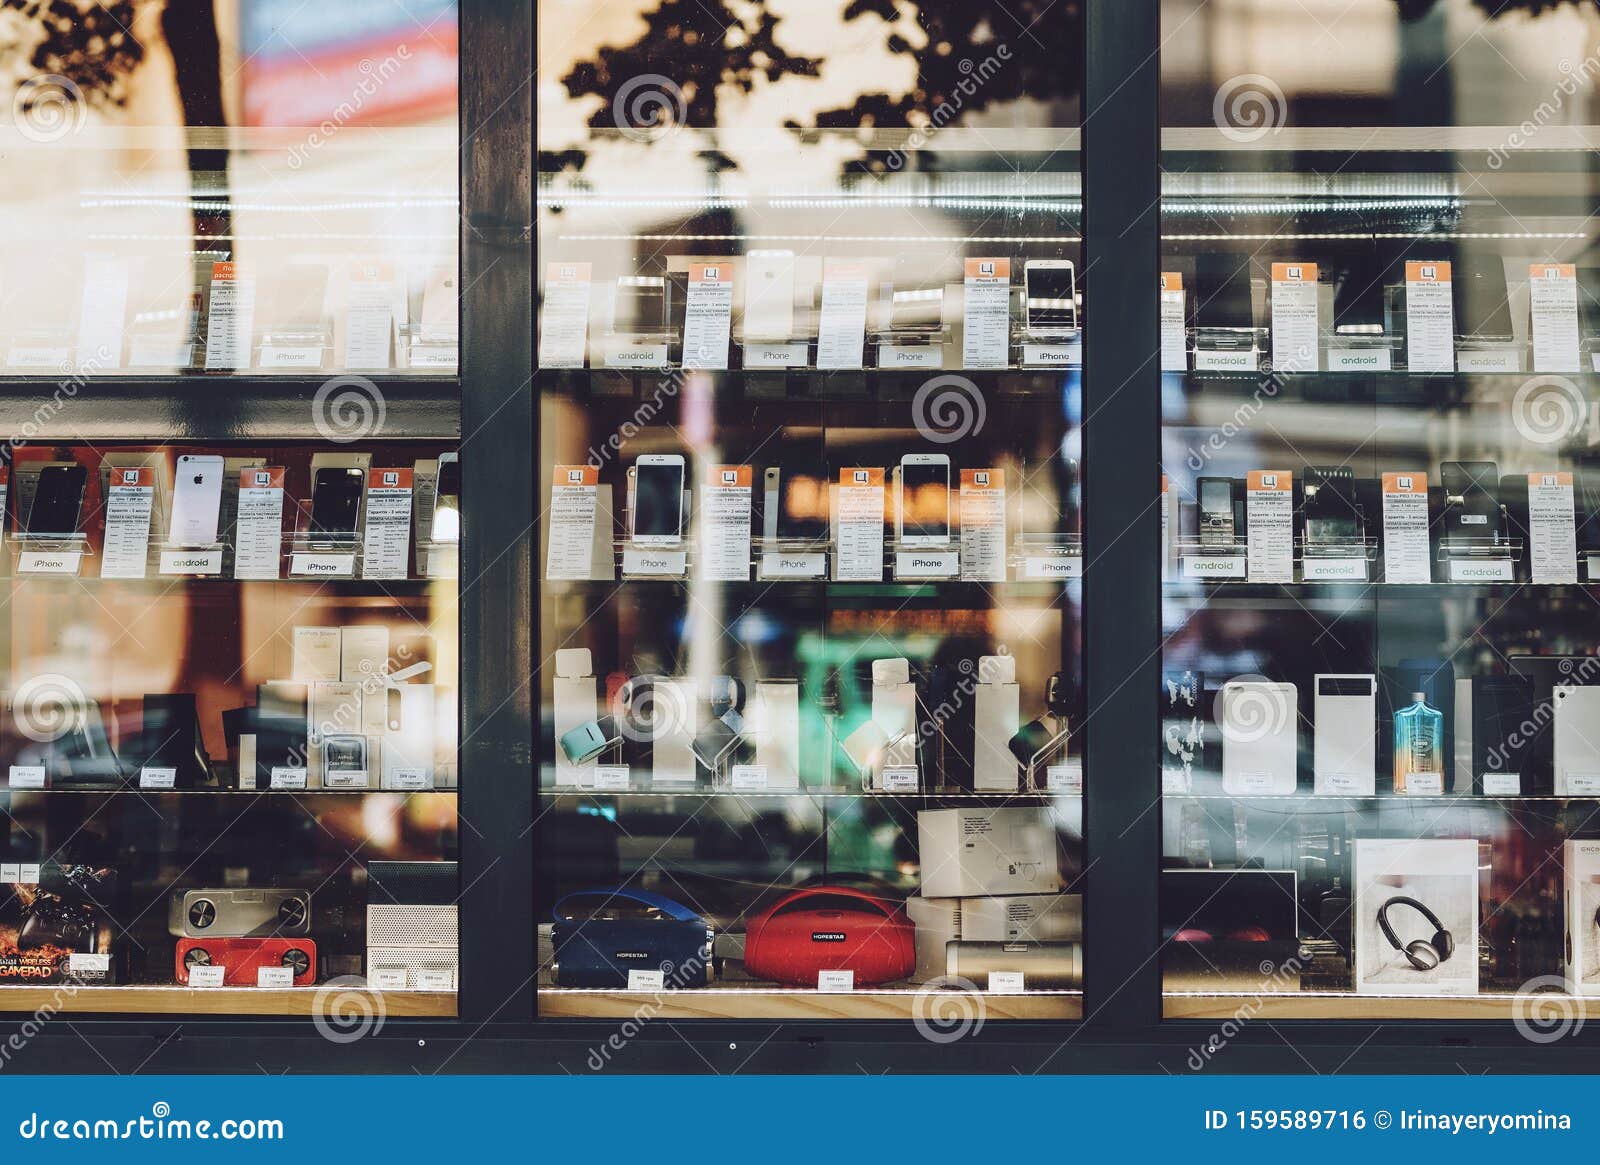 Киевский Магазин Телефонов